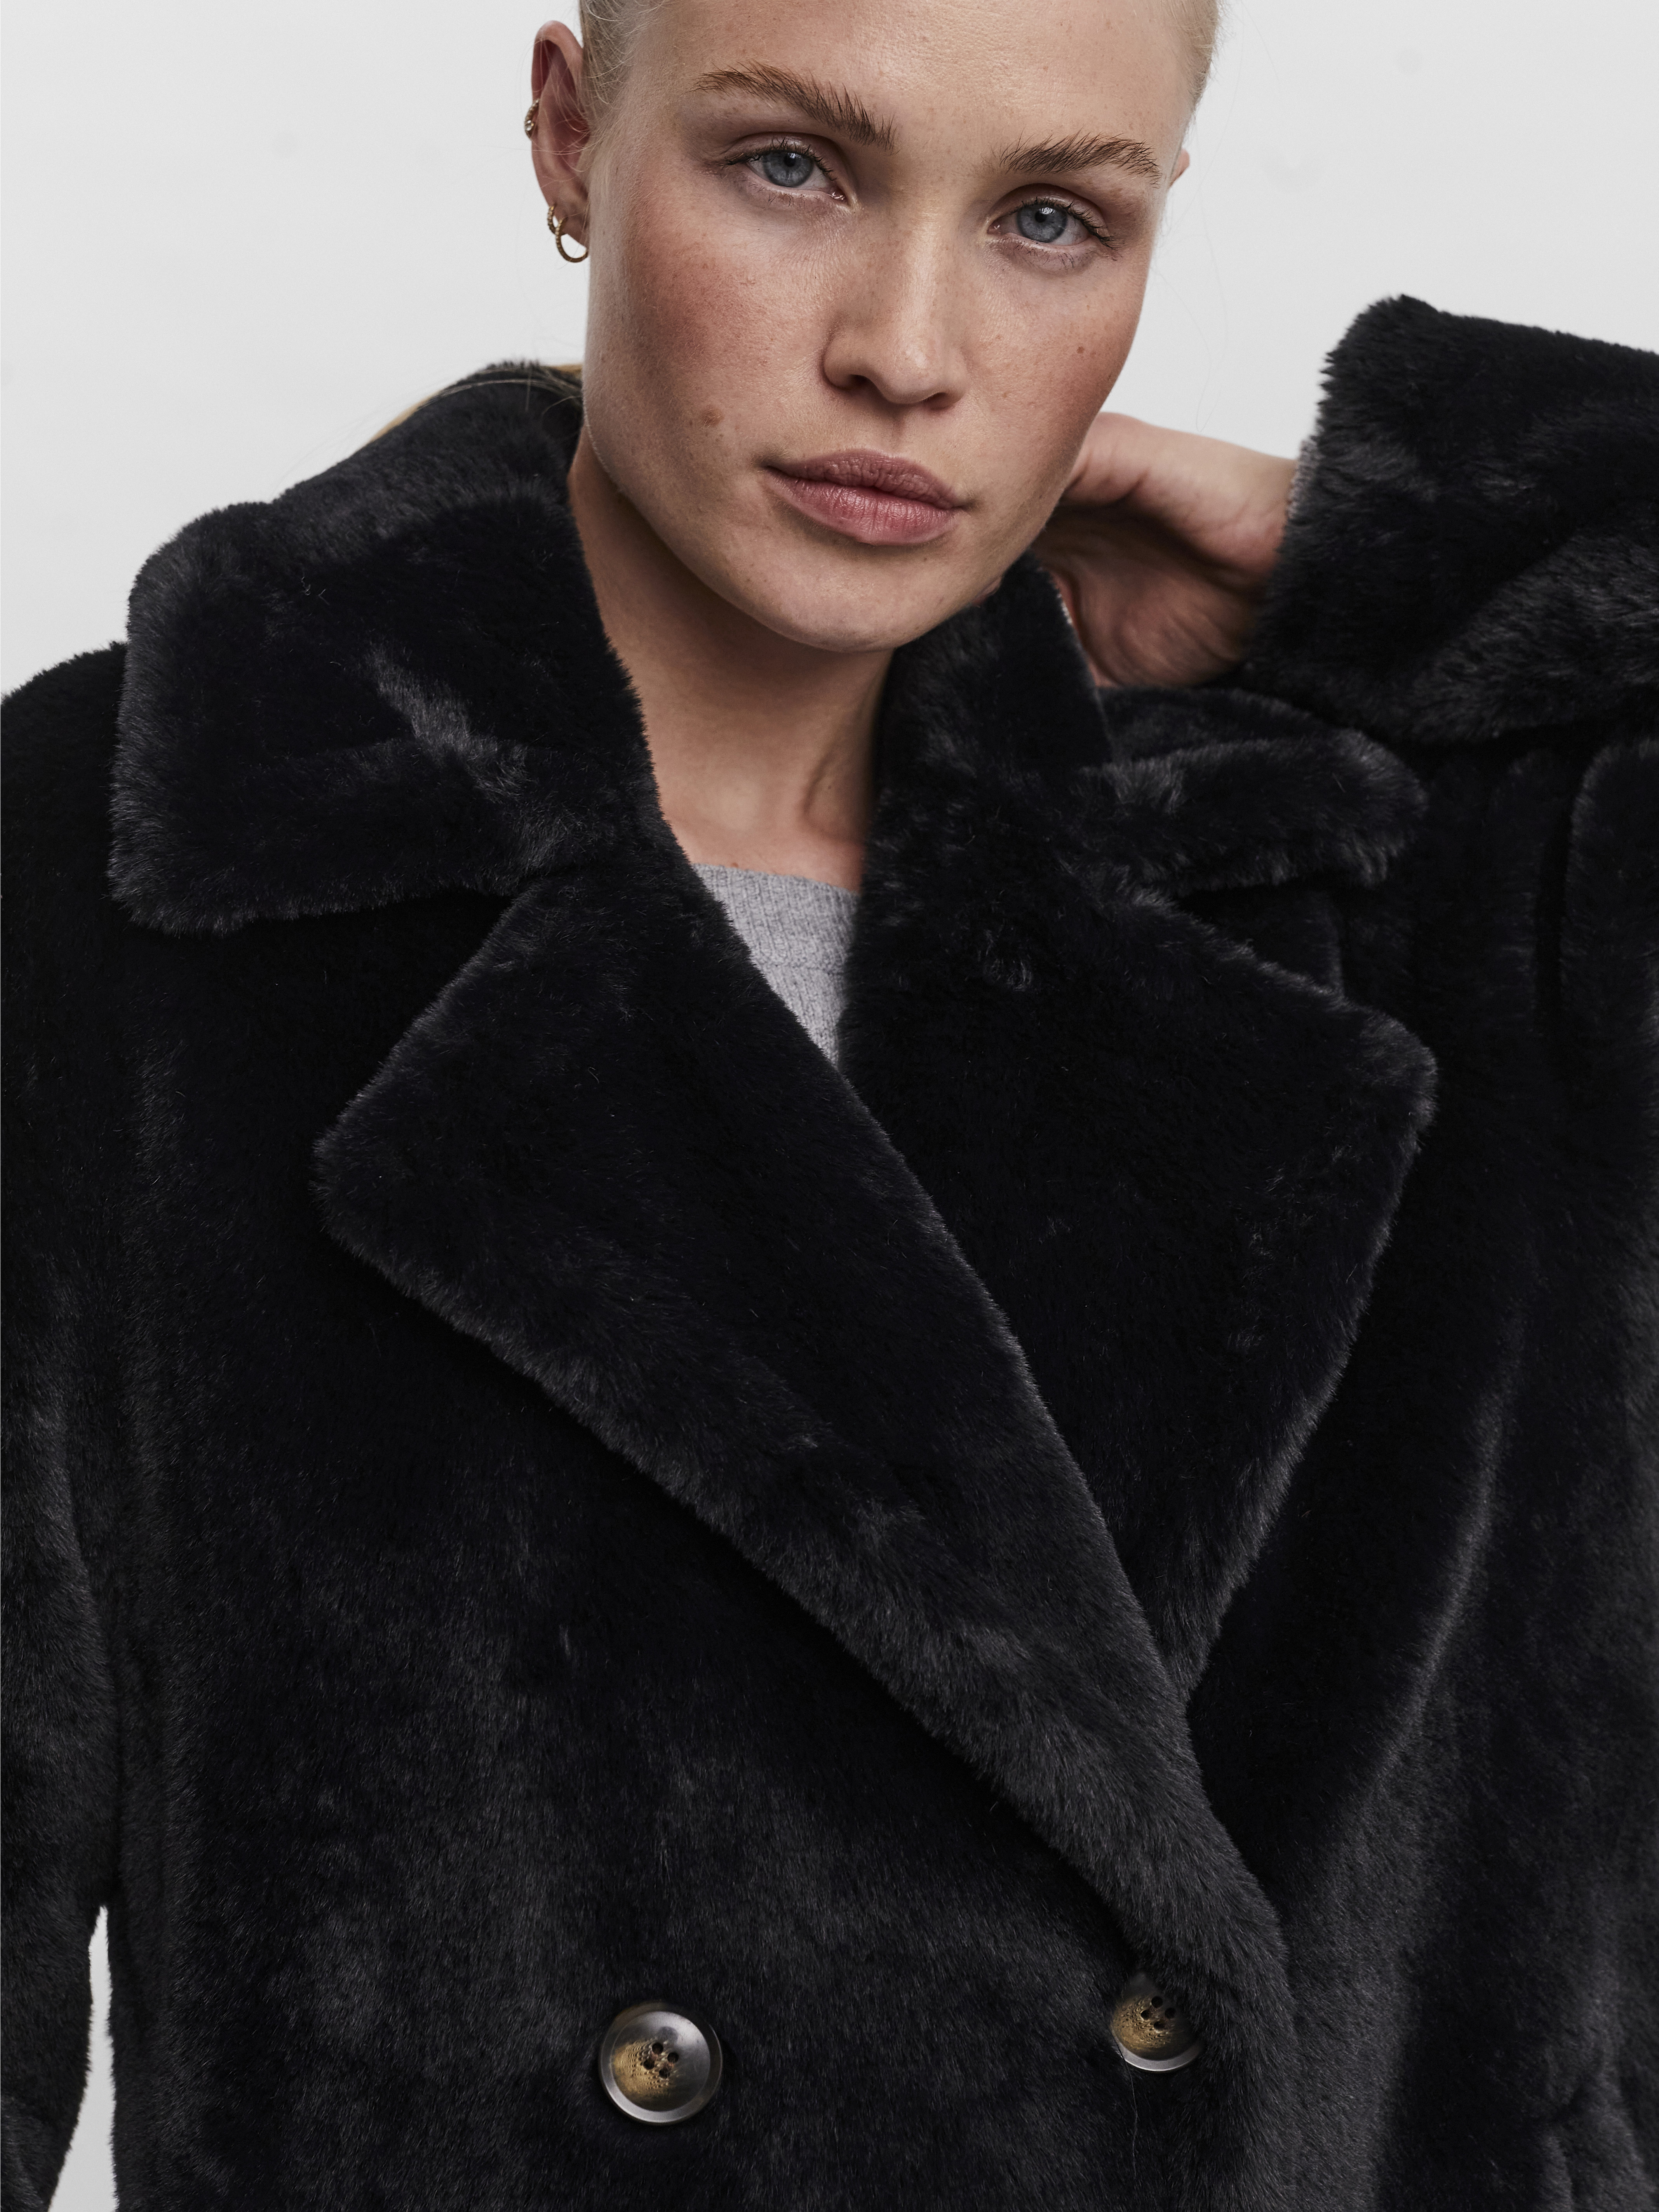 FINAL SALE - Suilyon double breasted faux-fur coat, BLACK, large